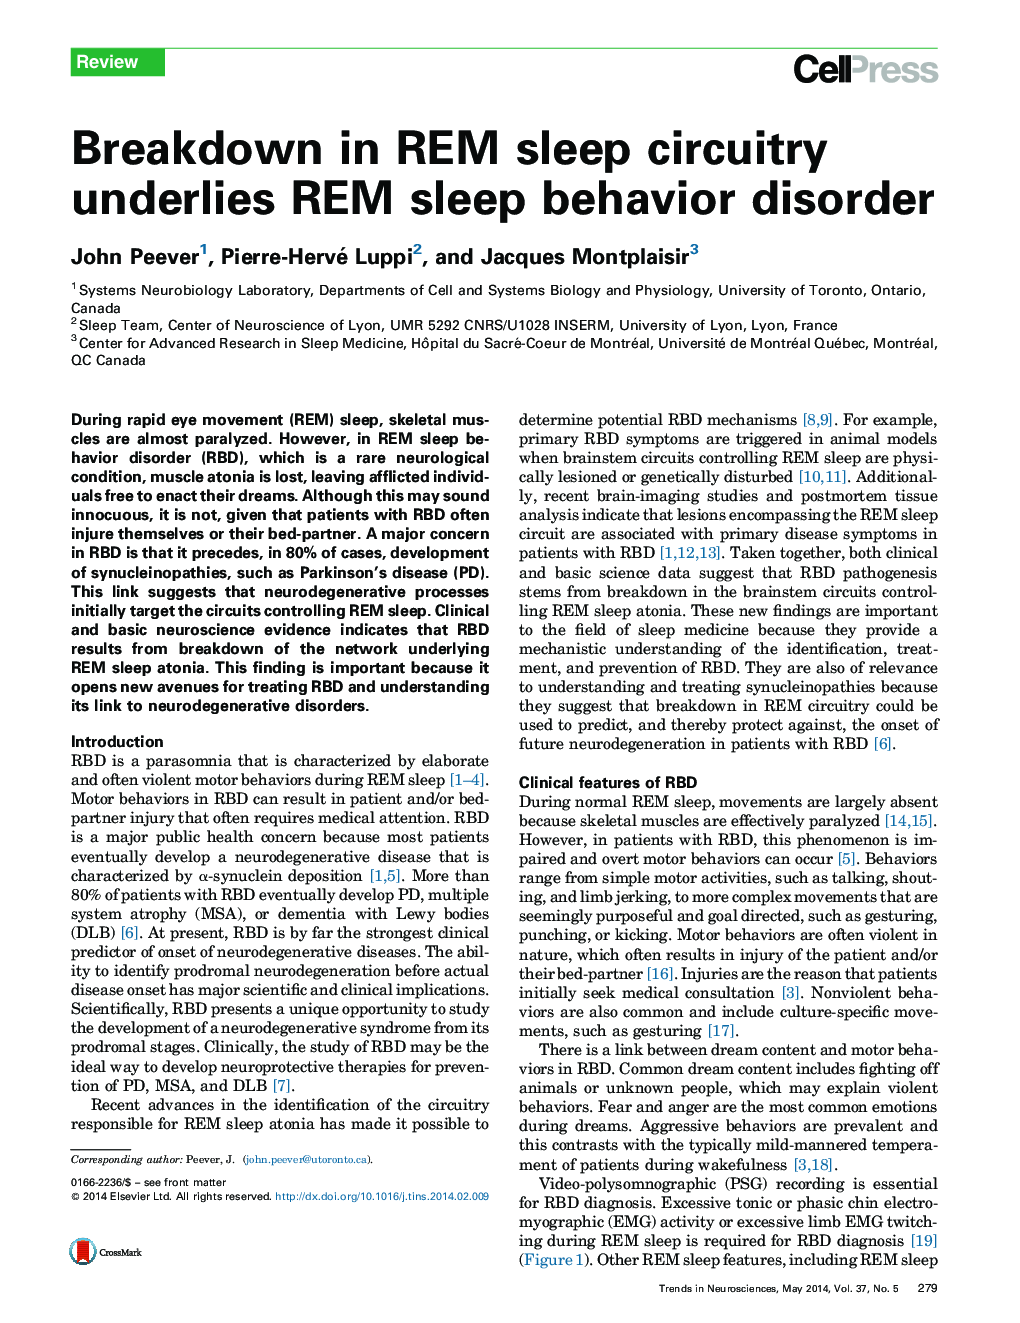 Breakdown in REM sleep circuitry underlies REM sleep behavior disorder